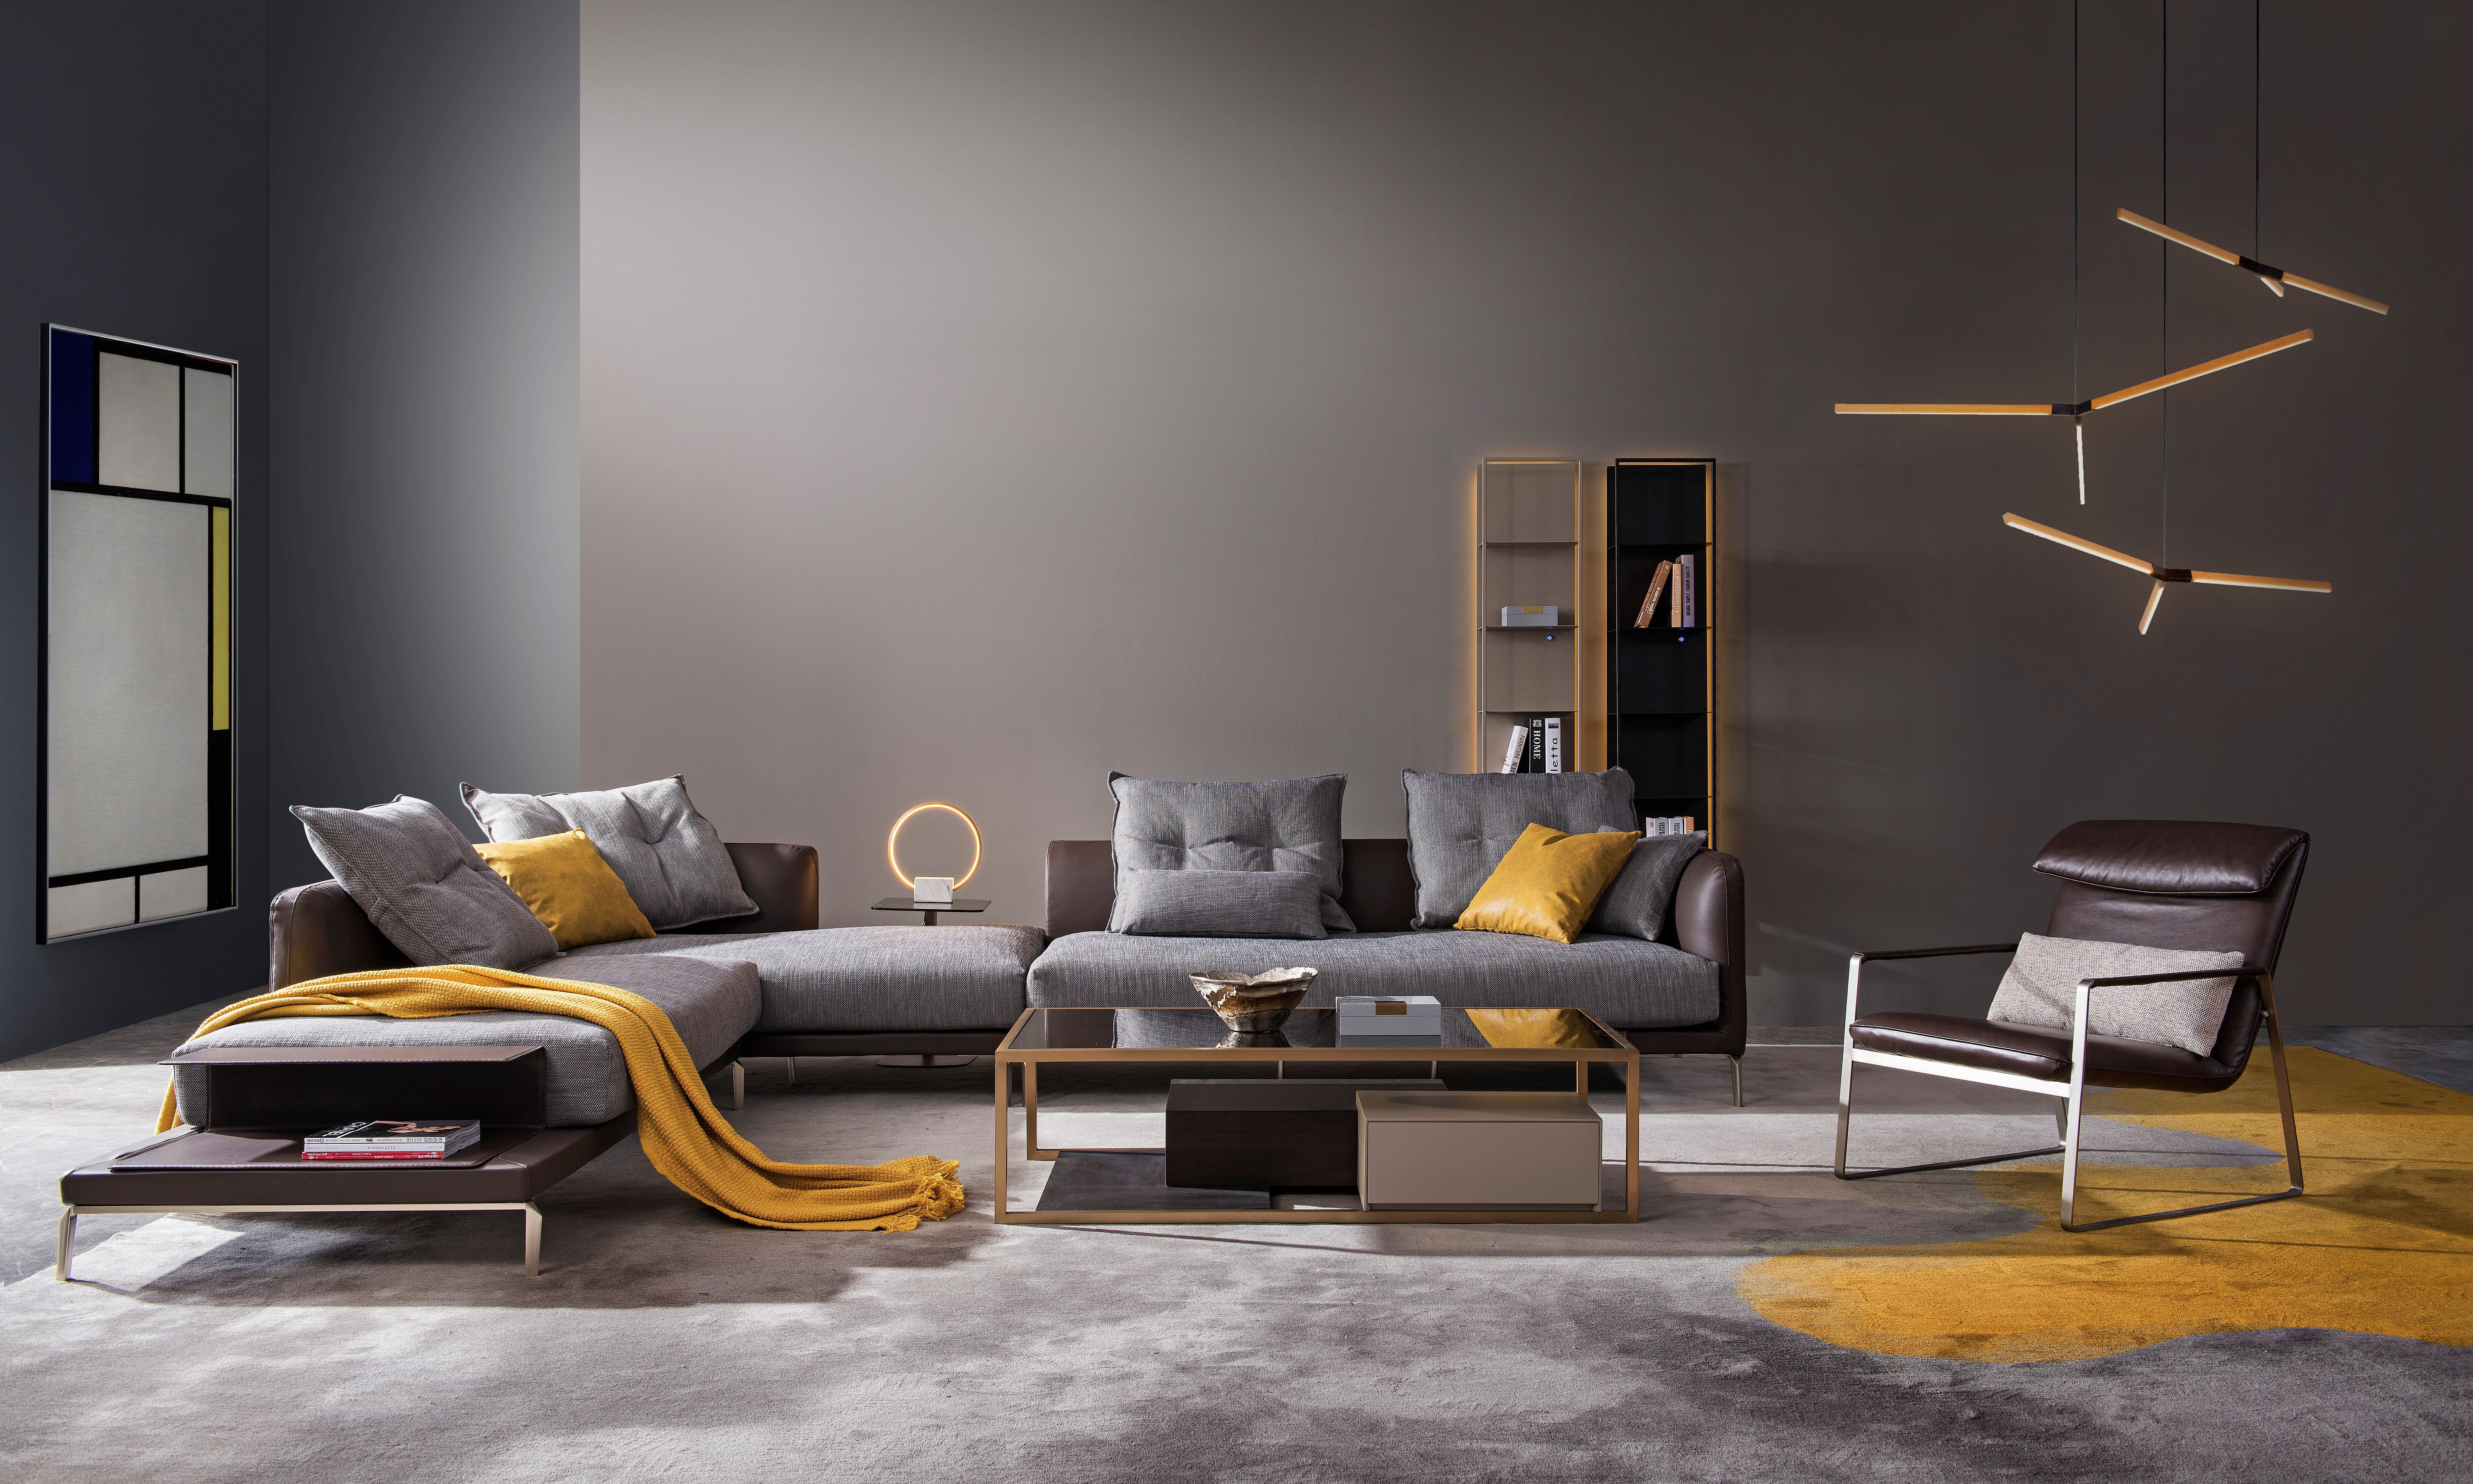 Divani & Sofa’ lansează oportunităţi de franciză în industria mobilierului premium şi high-end